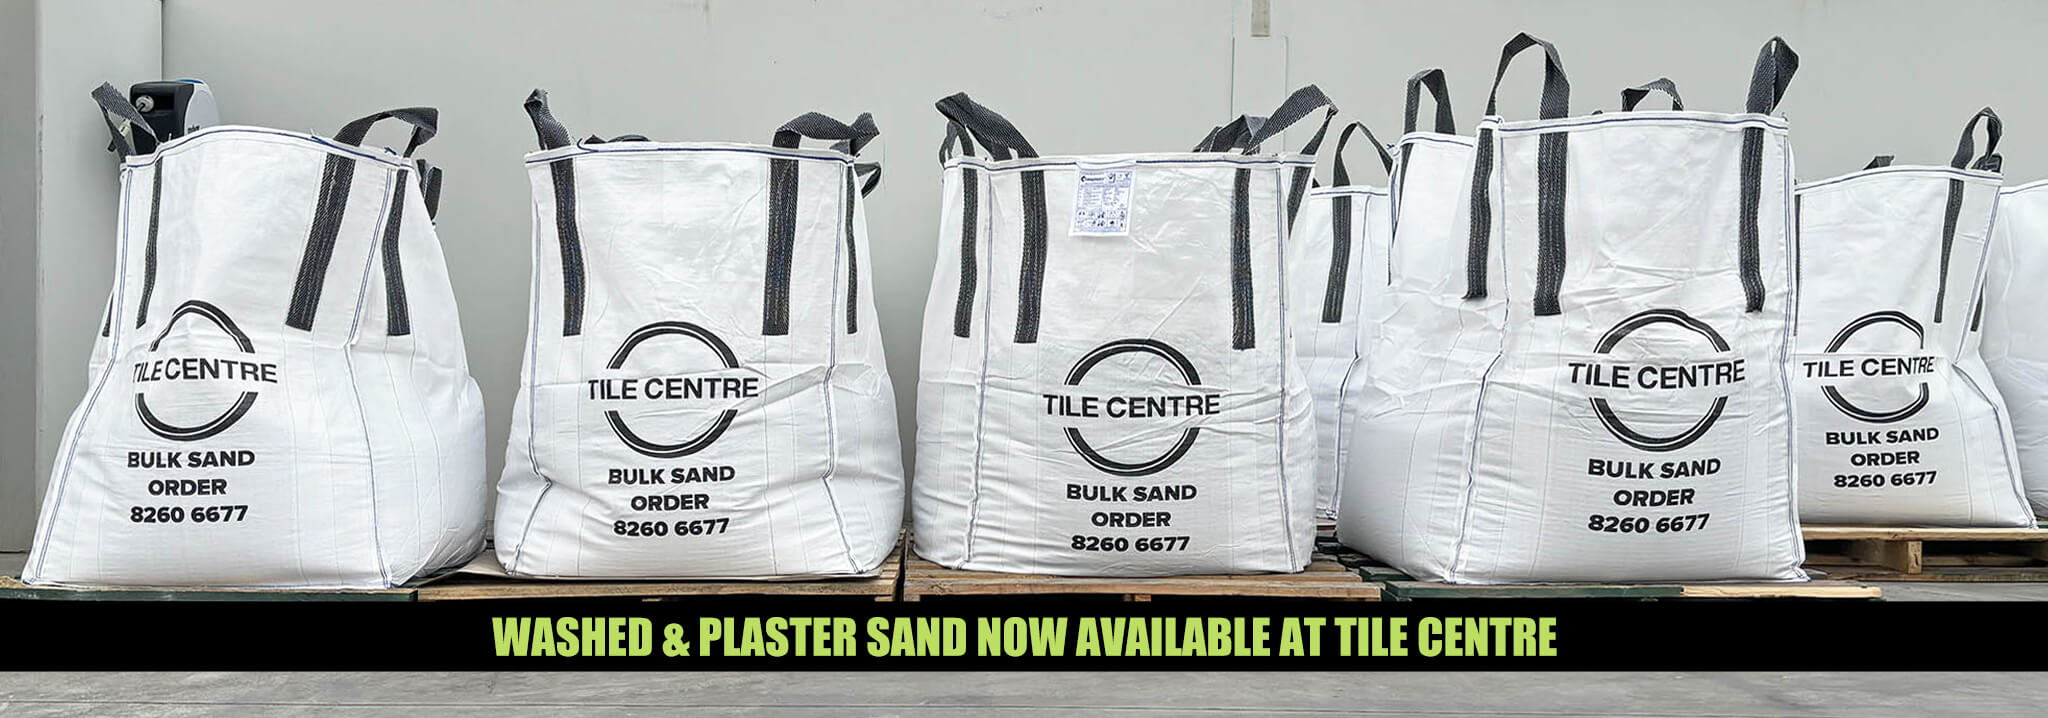 Washed & Plaster Sand